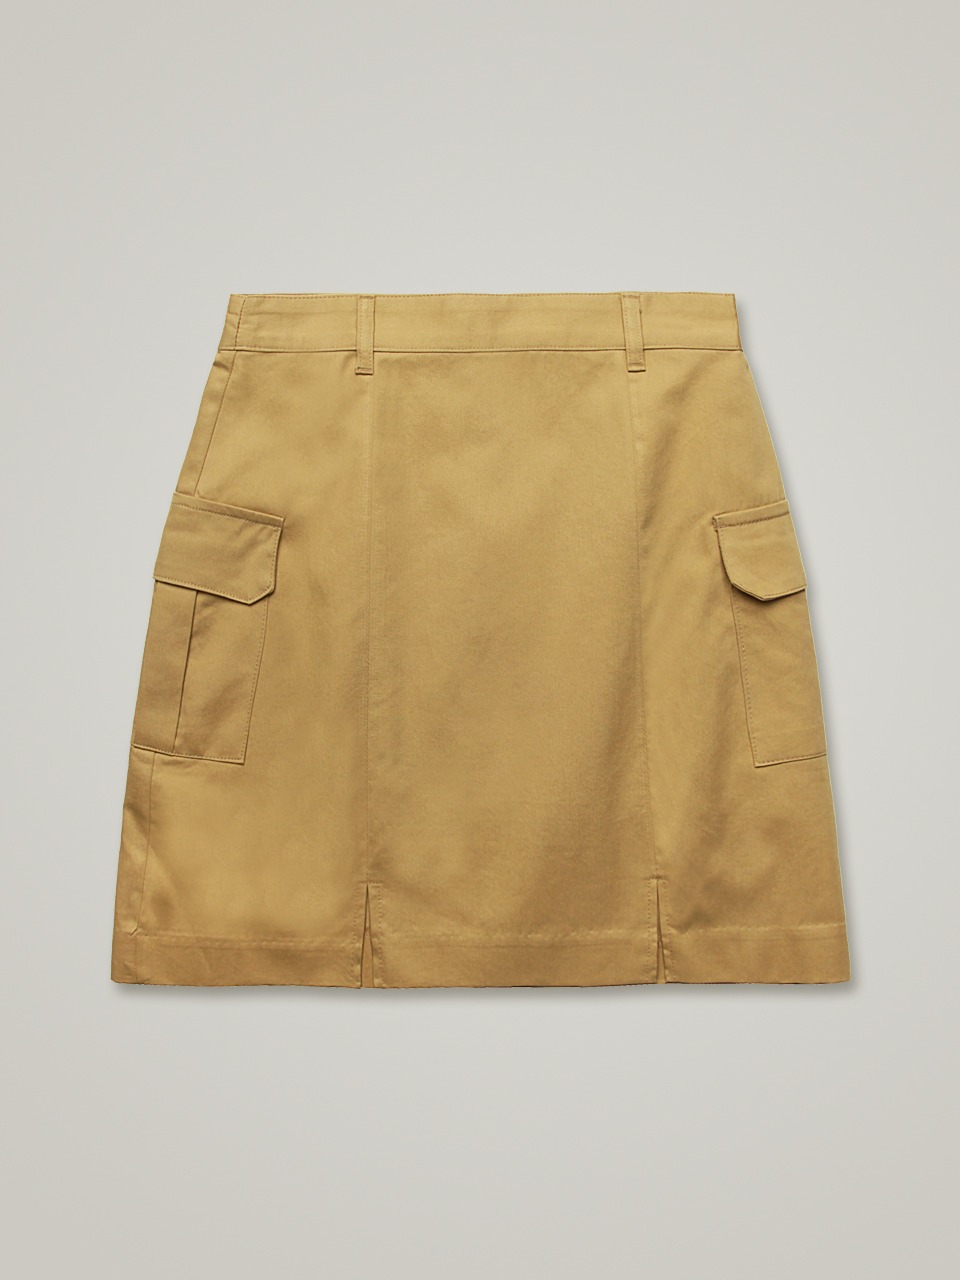 comos 816 out pocket skirt (beige)